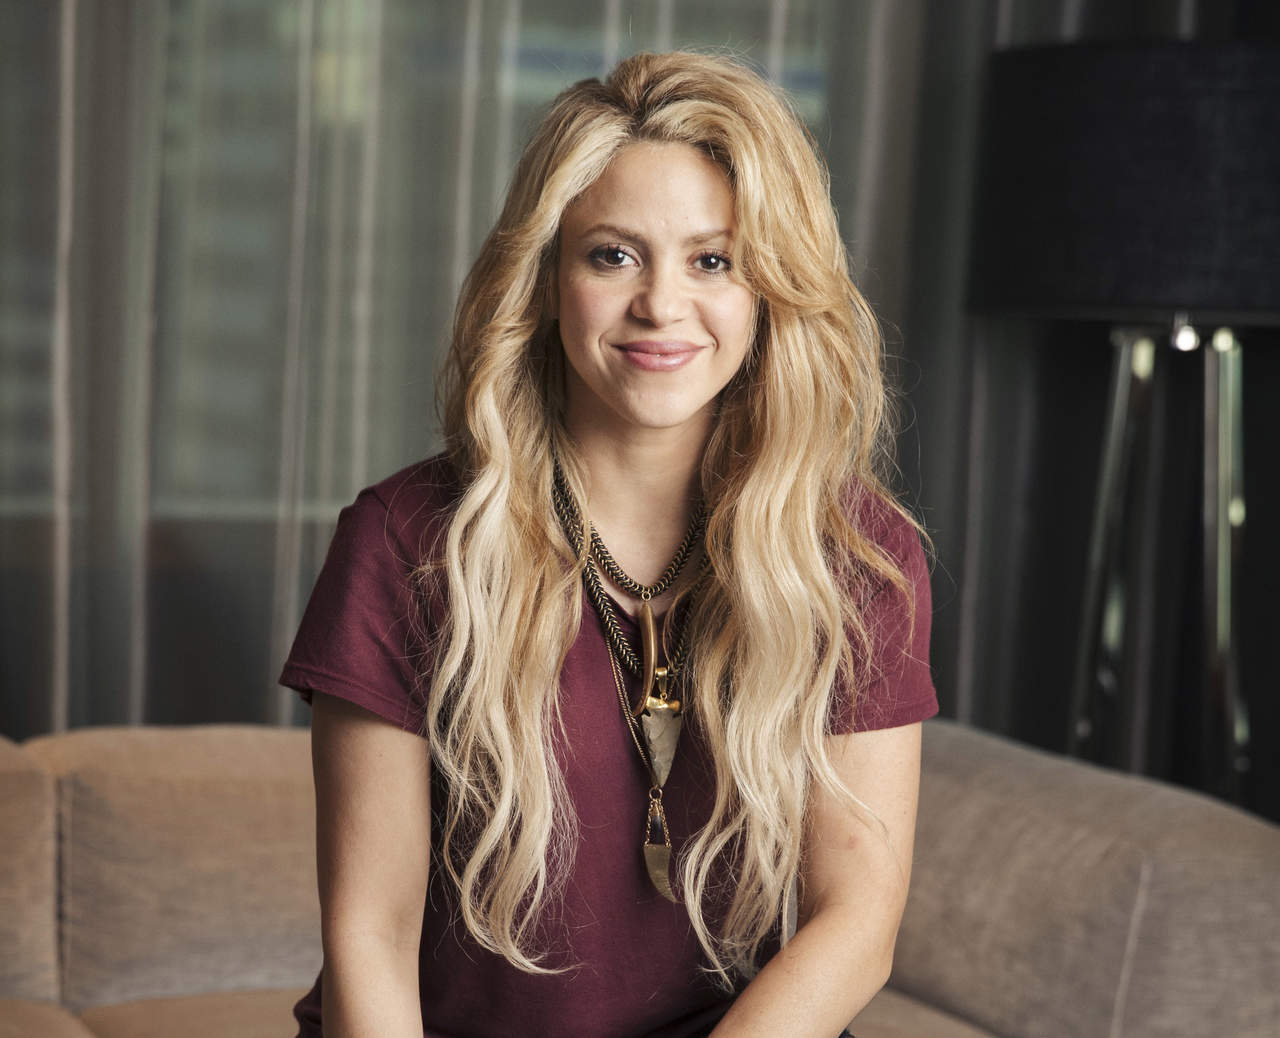 Shakira iniciaría su gira mundial el miércoles en Colonia, Alemania, pero canceló ese primer concierto por un problema vocal. Y el jueves, anunció que tampoco haría los cuatro siguientes conciertos, que presentaría en París, Amberes y Ámsterdam. (ARCHIVO)